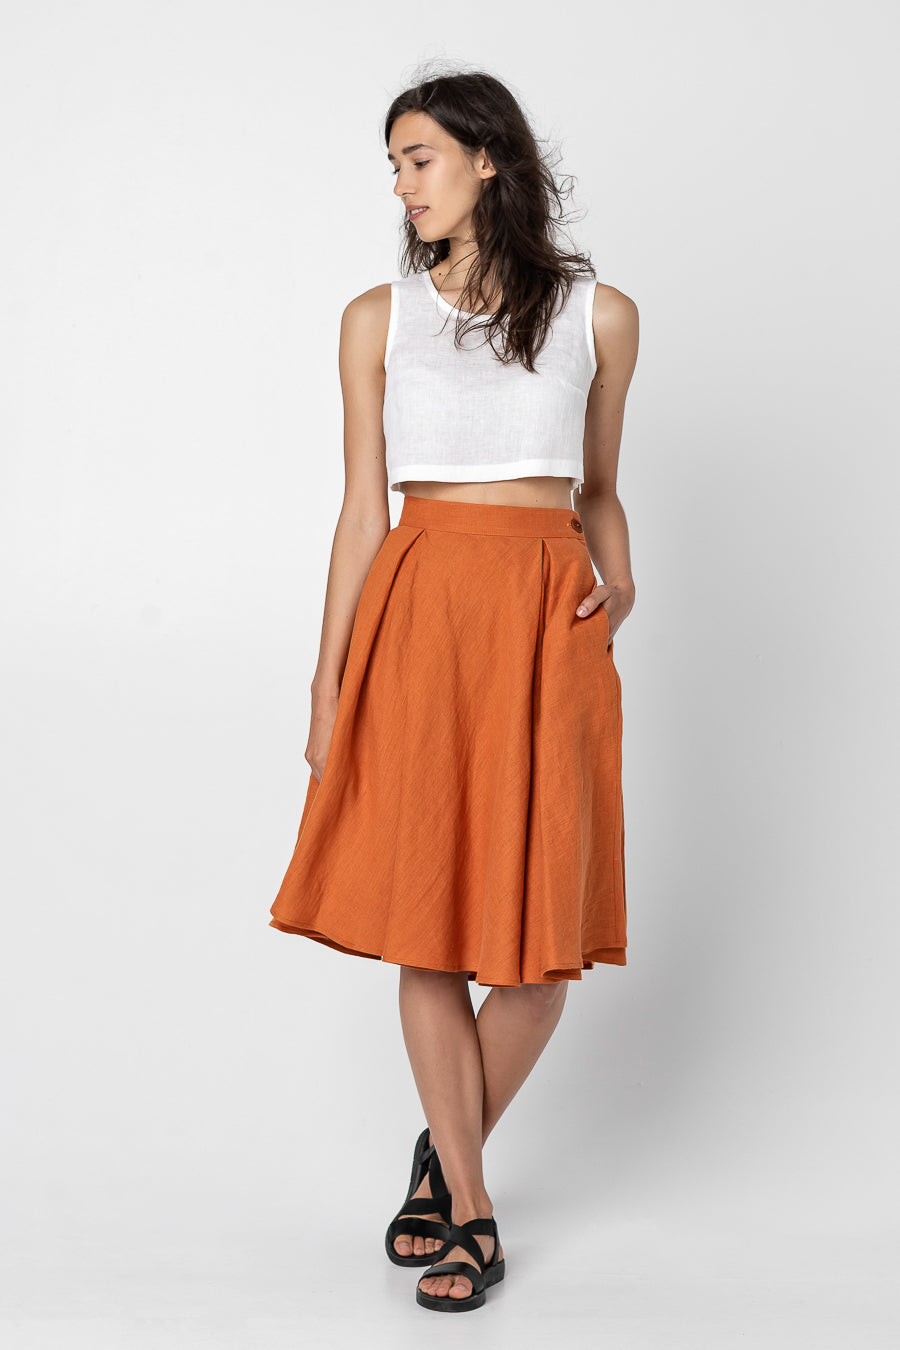 ARI | Long linen skirt - Mezzoroni